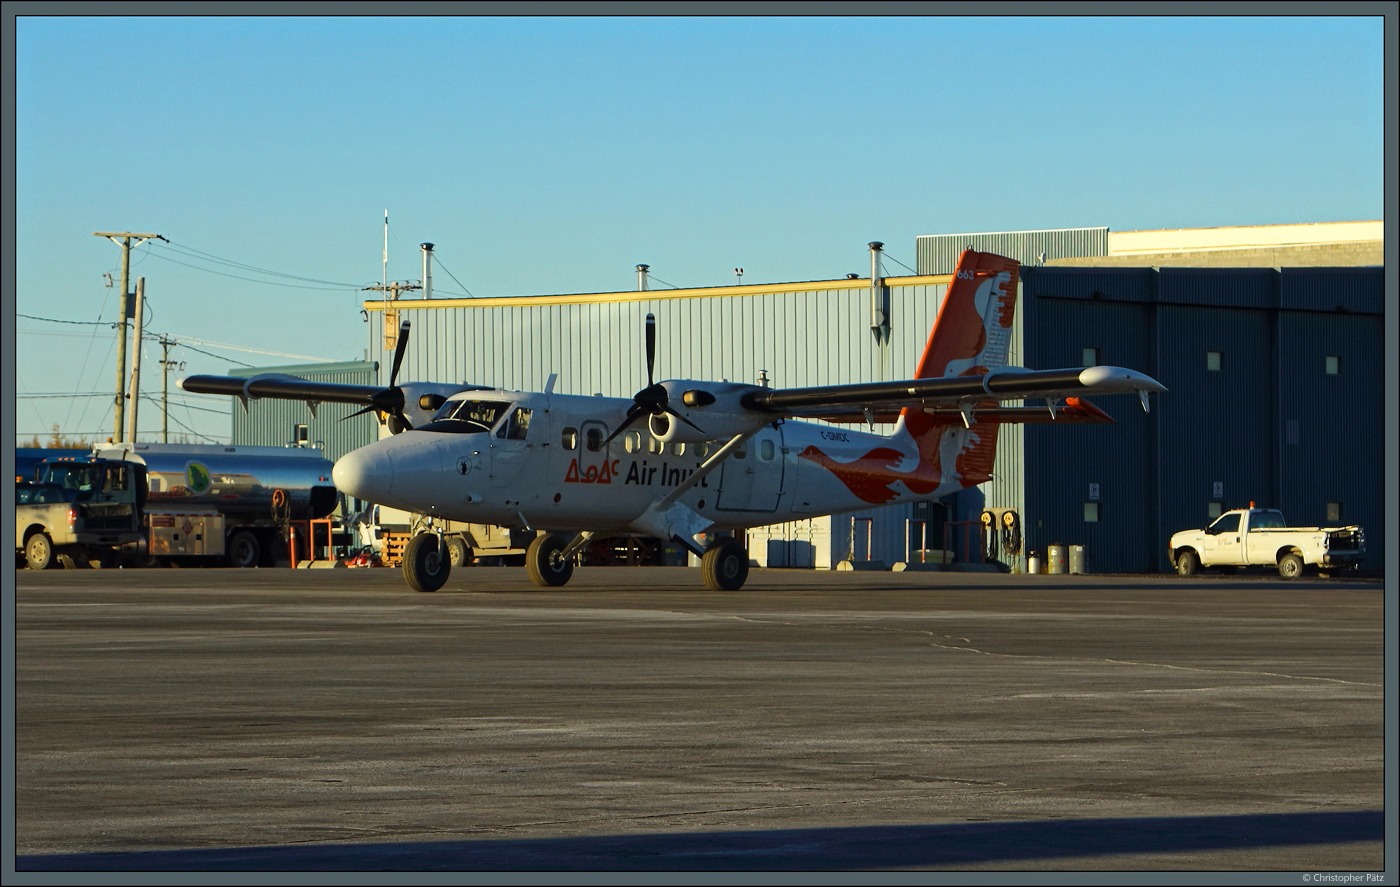 Für die abgelegenen Flugplätze setzt Air Inuit mehrere Twin Otter ein. Die C-GMDC ist seit 1981 im Einsatz. Am 12.10.2022 wartet sie in Kuujjuaq im Abendlicht auf den nächsten Flug.